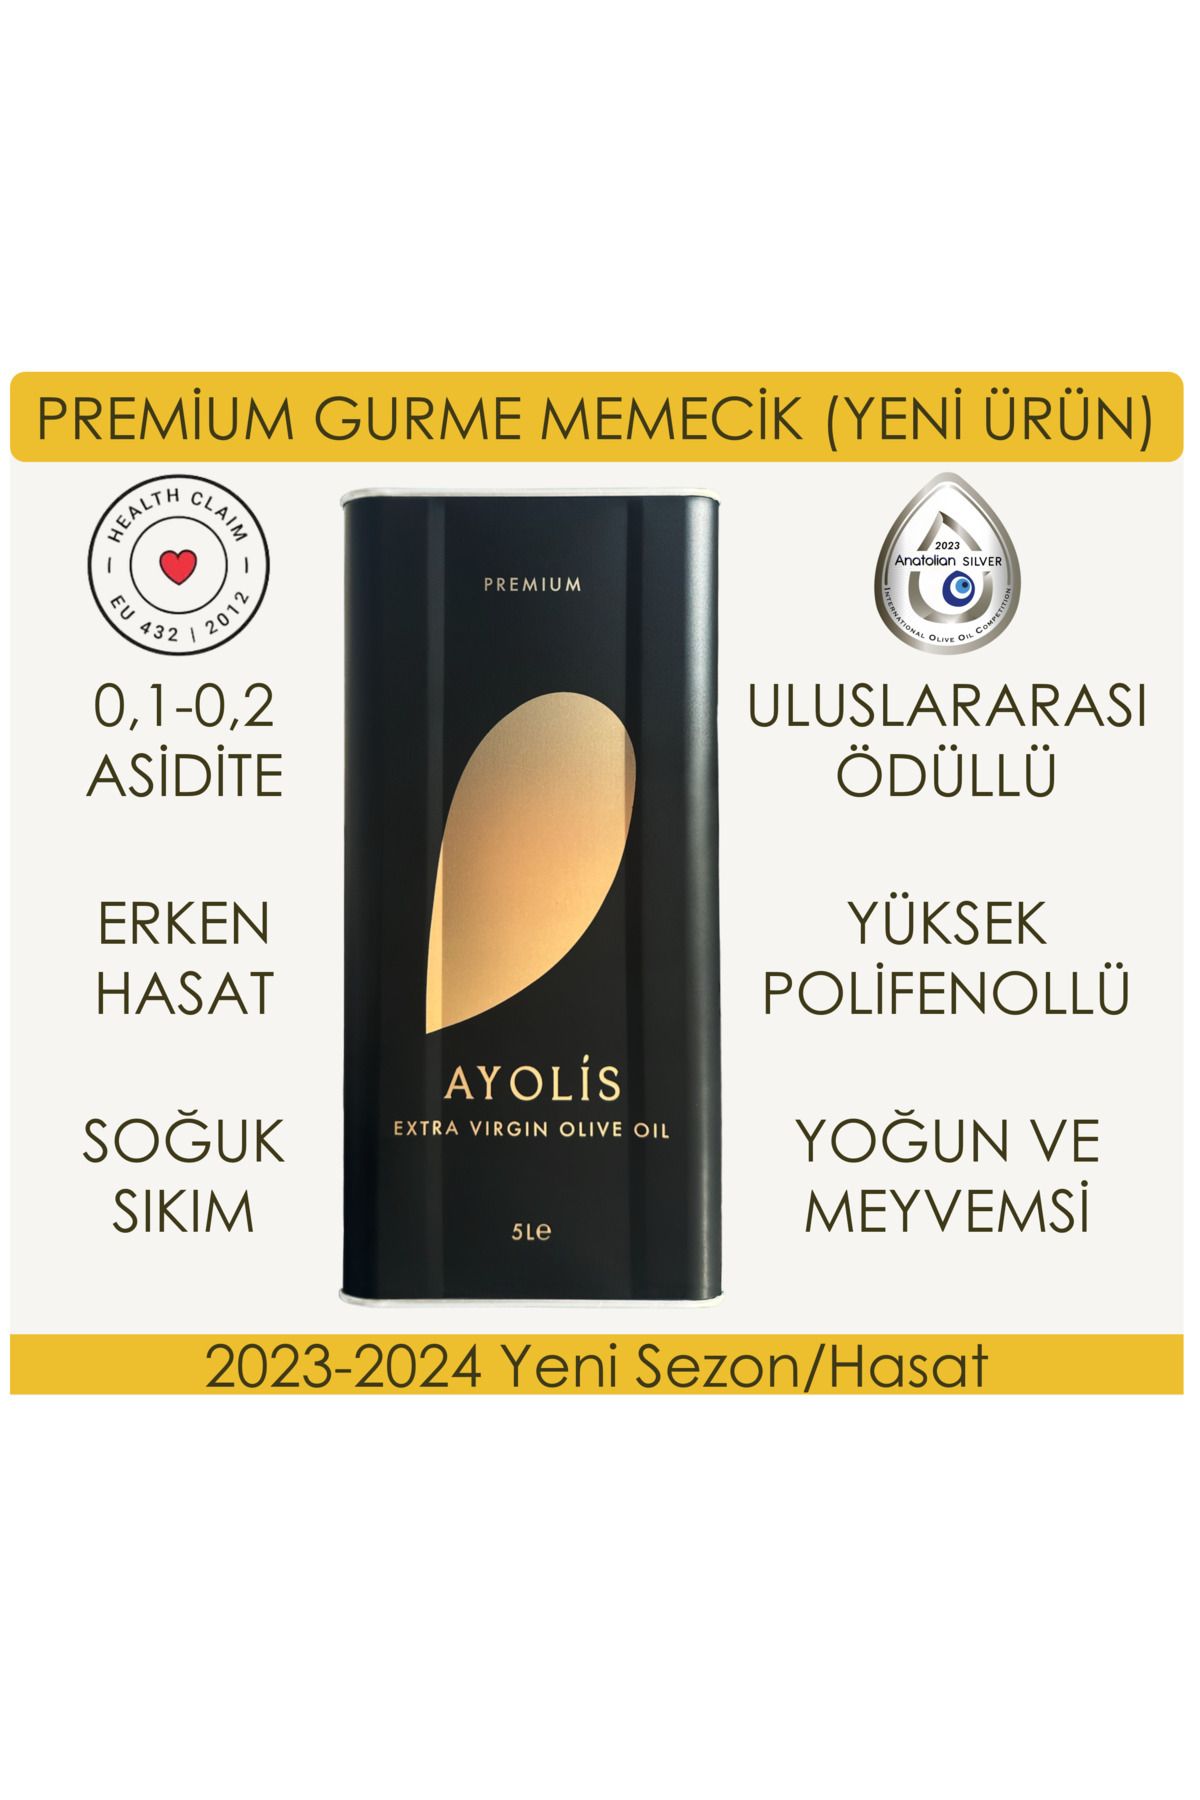 Ayolis Premium Gurme Memecik 5 Lt Yüksek Polifenollü Erken Hasat Soğuk Sıkım Natürel Sızma Zeytinyağı